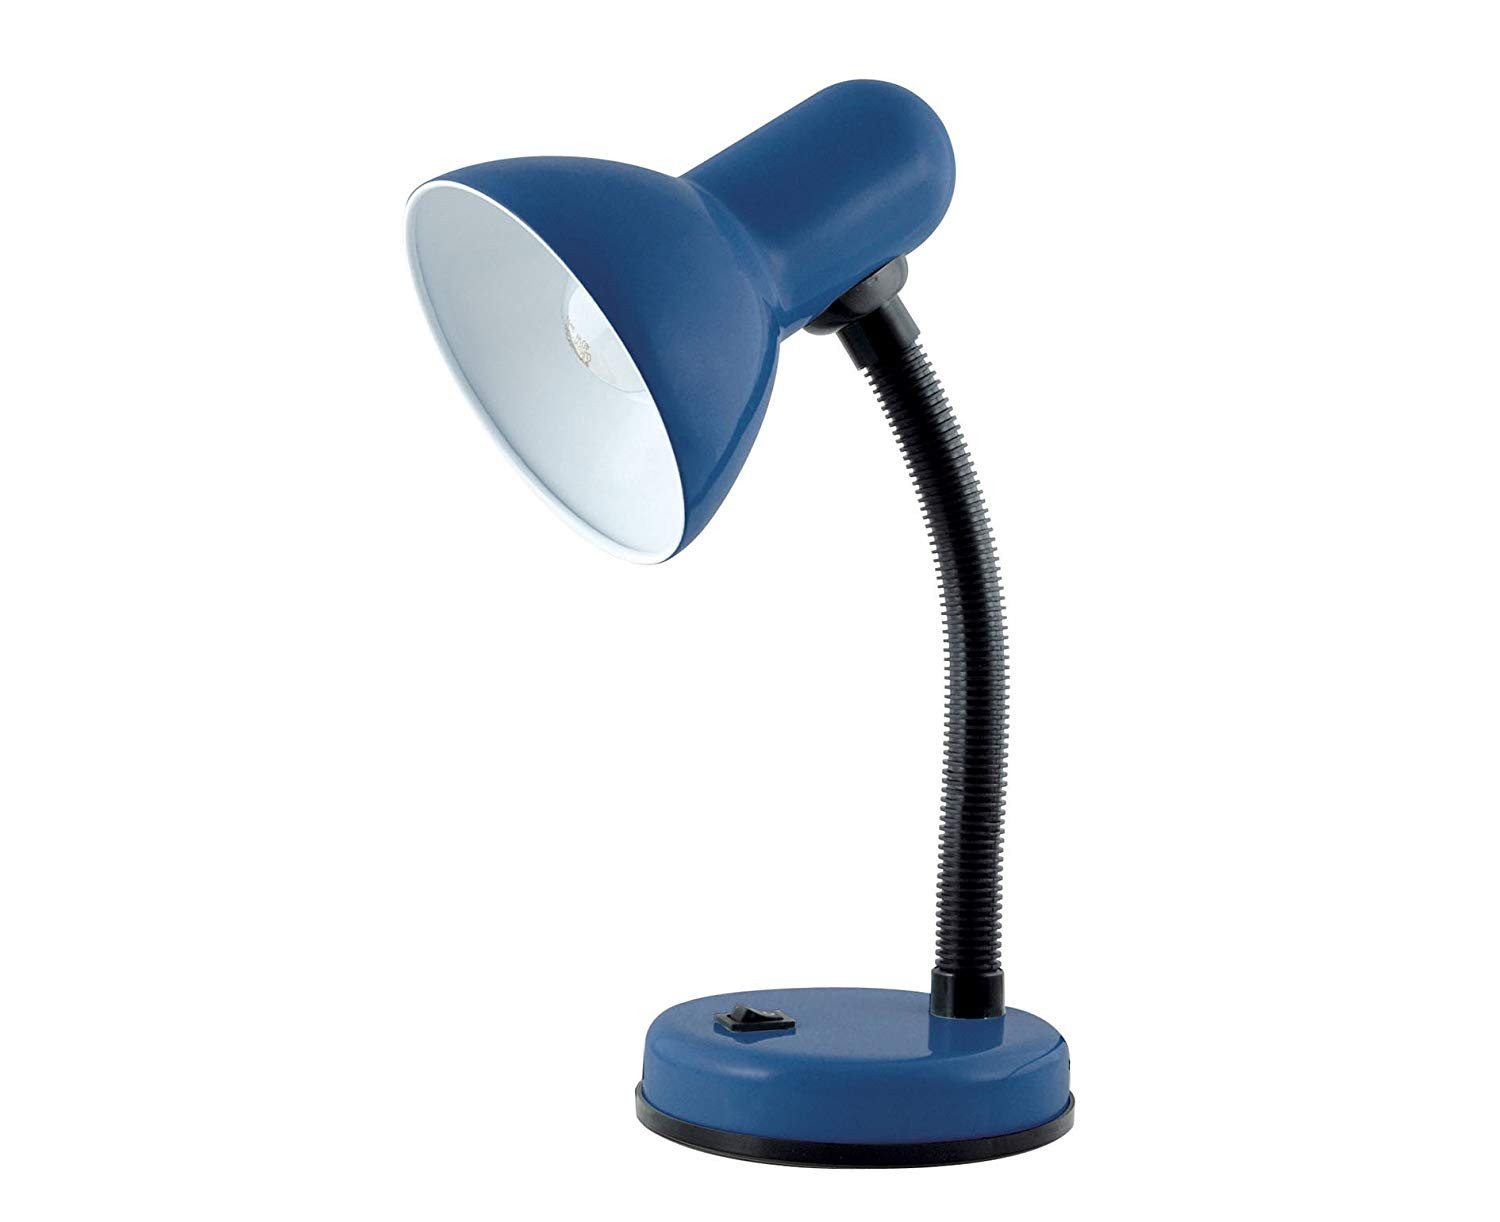 Best ideas about Blue Desk Lamp
. Save or Pin Lloytron L958NB Desk Lamp Navy Blue Now.